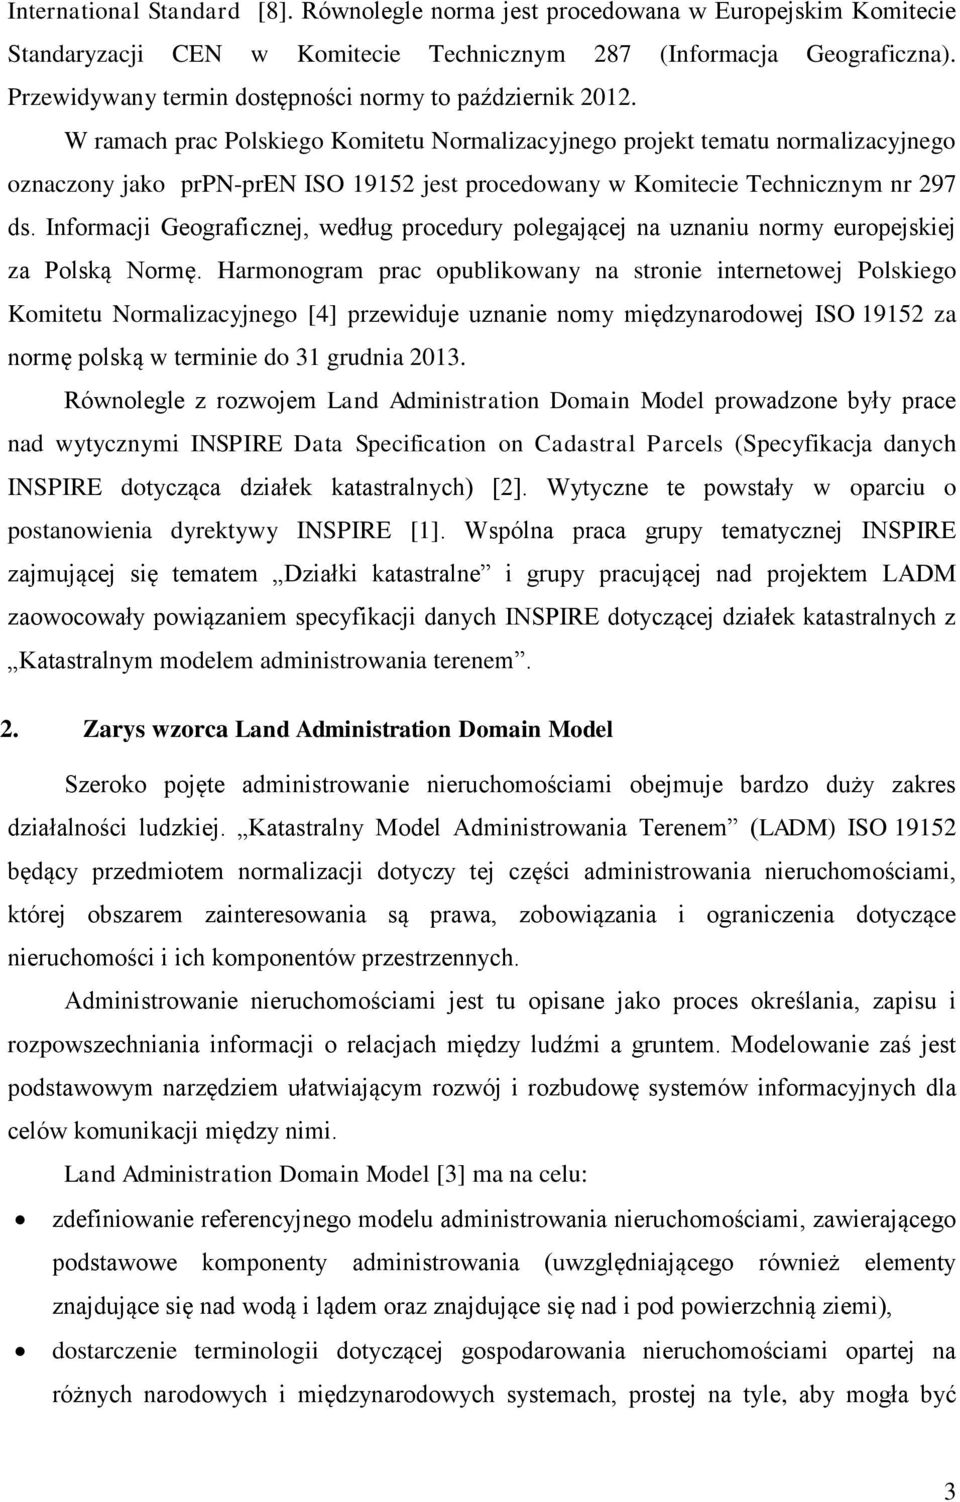 W ramach prac Polskiego Komitetu Normalizacyjnego projekt tematu normalizacyjnego oznaczony jako prpn-pren ISO 19152 jest procedowany w Komitecie Technicznym nr 297 ds.